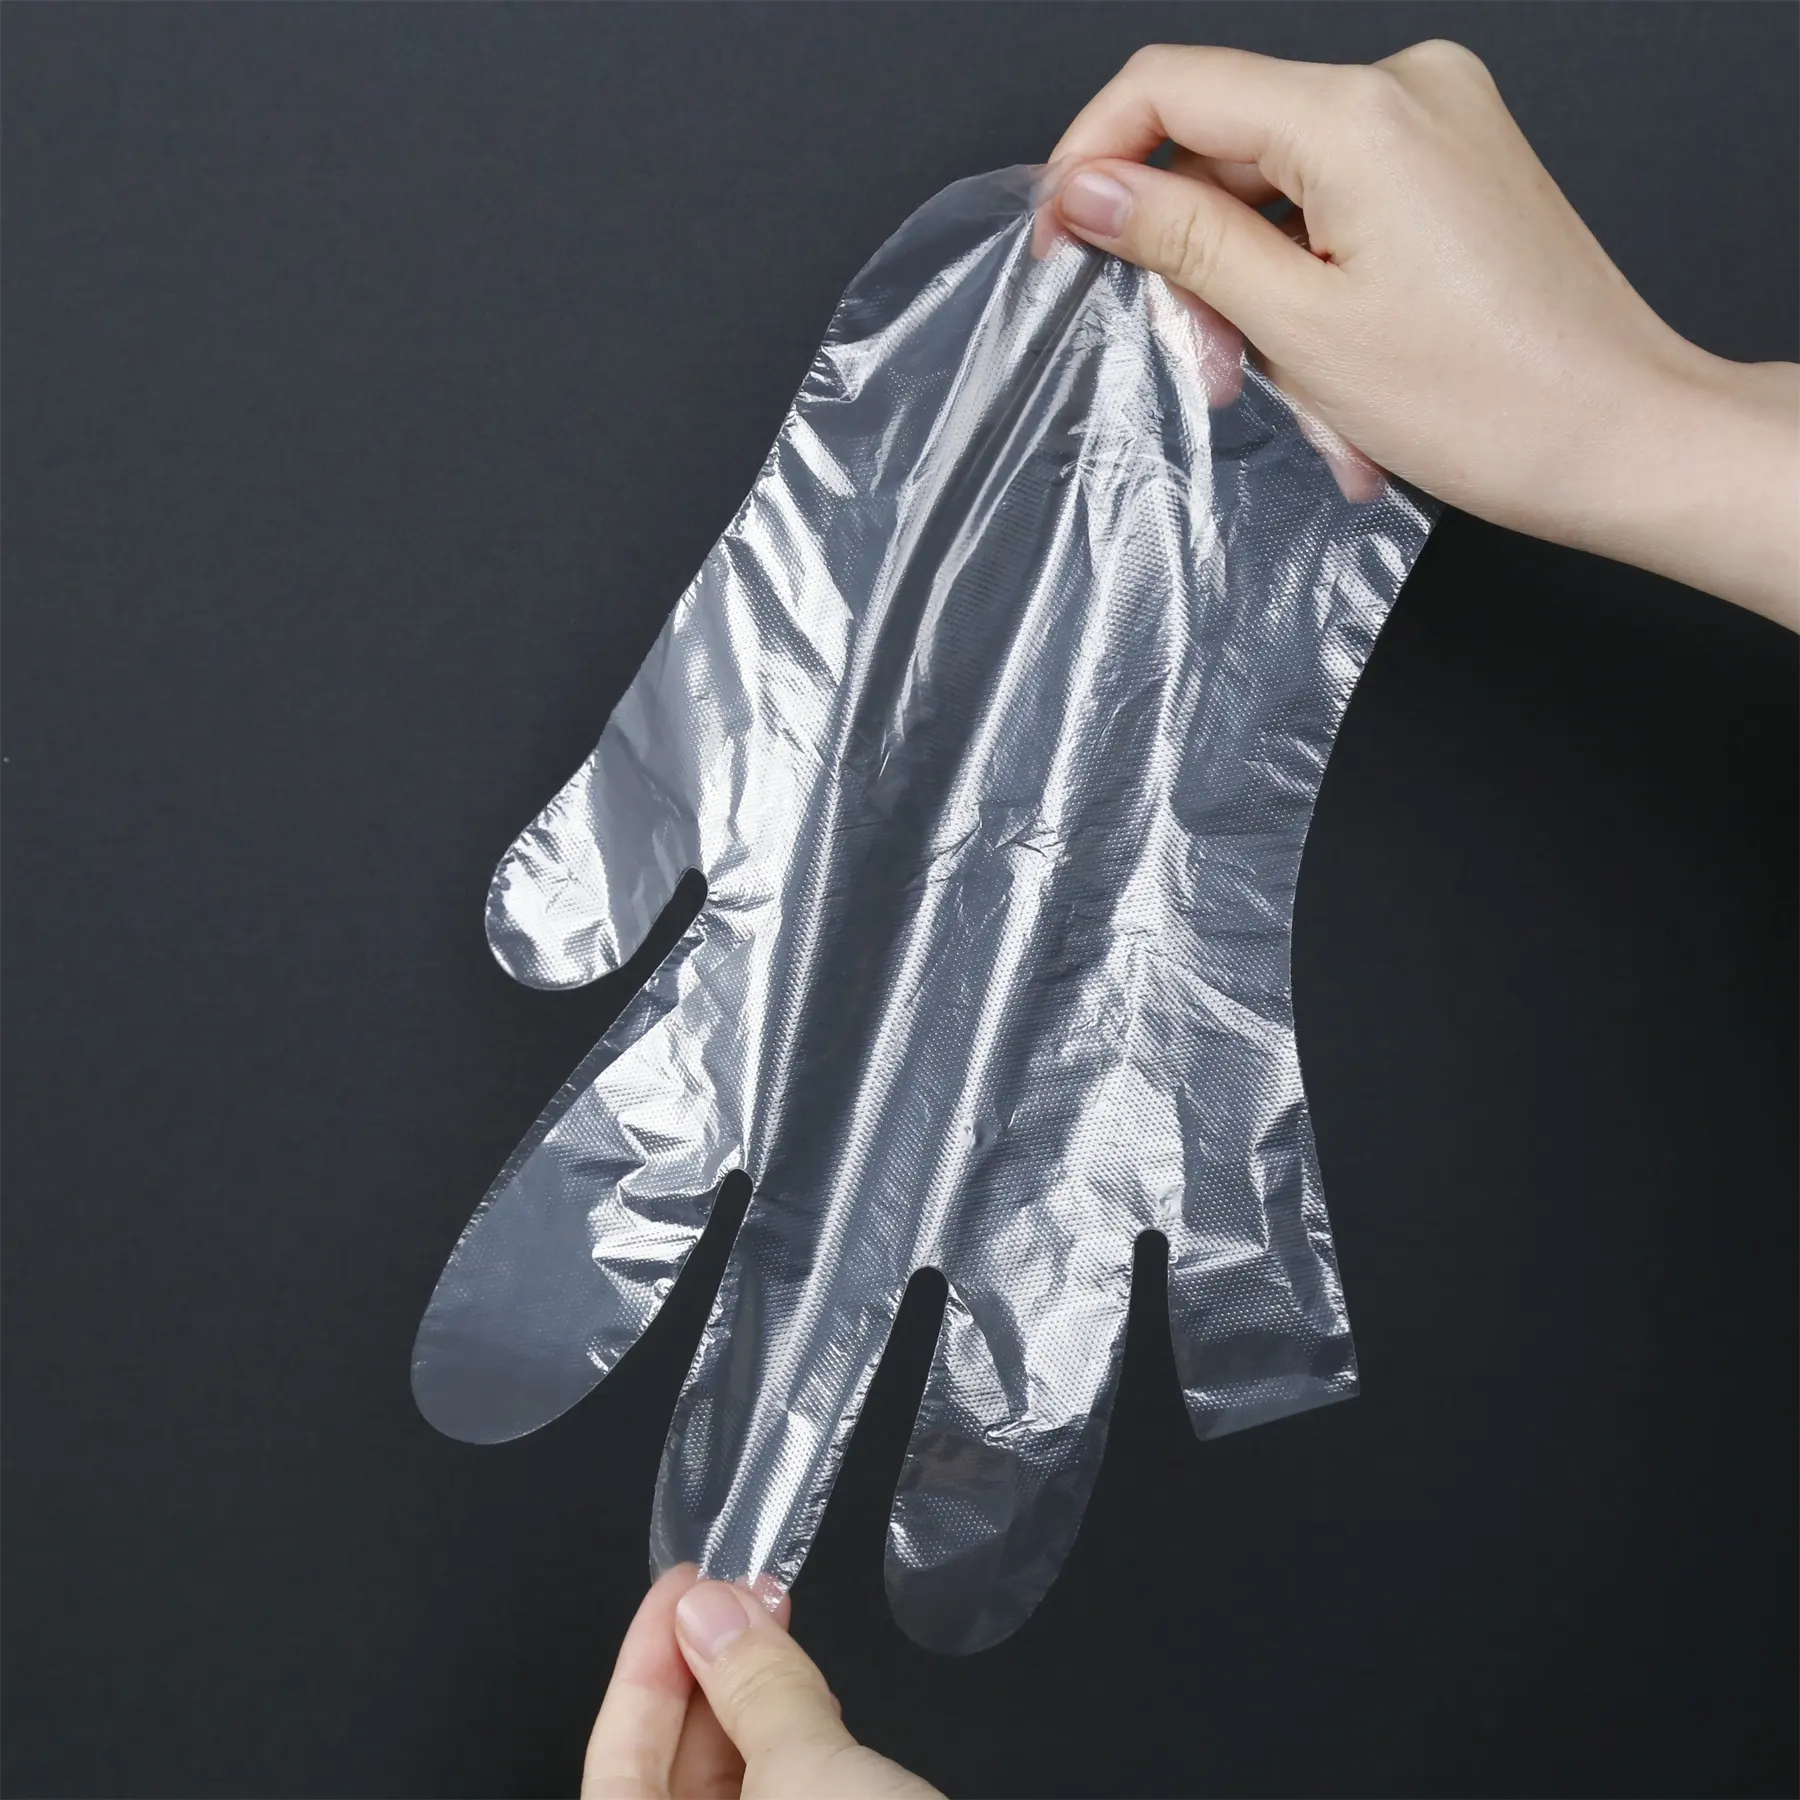 Schlussverkauf Einweg-LDPE-Handschuhe HDPE-Handschuhe Poly-PE-Handschuhe für mehrzweckgebrauch Lebensmittel Hausarbeit Reinigung transparent oder beliebiger Farbe